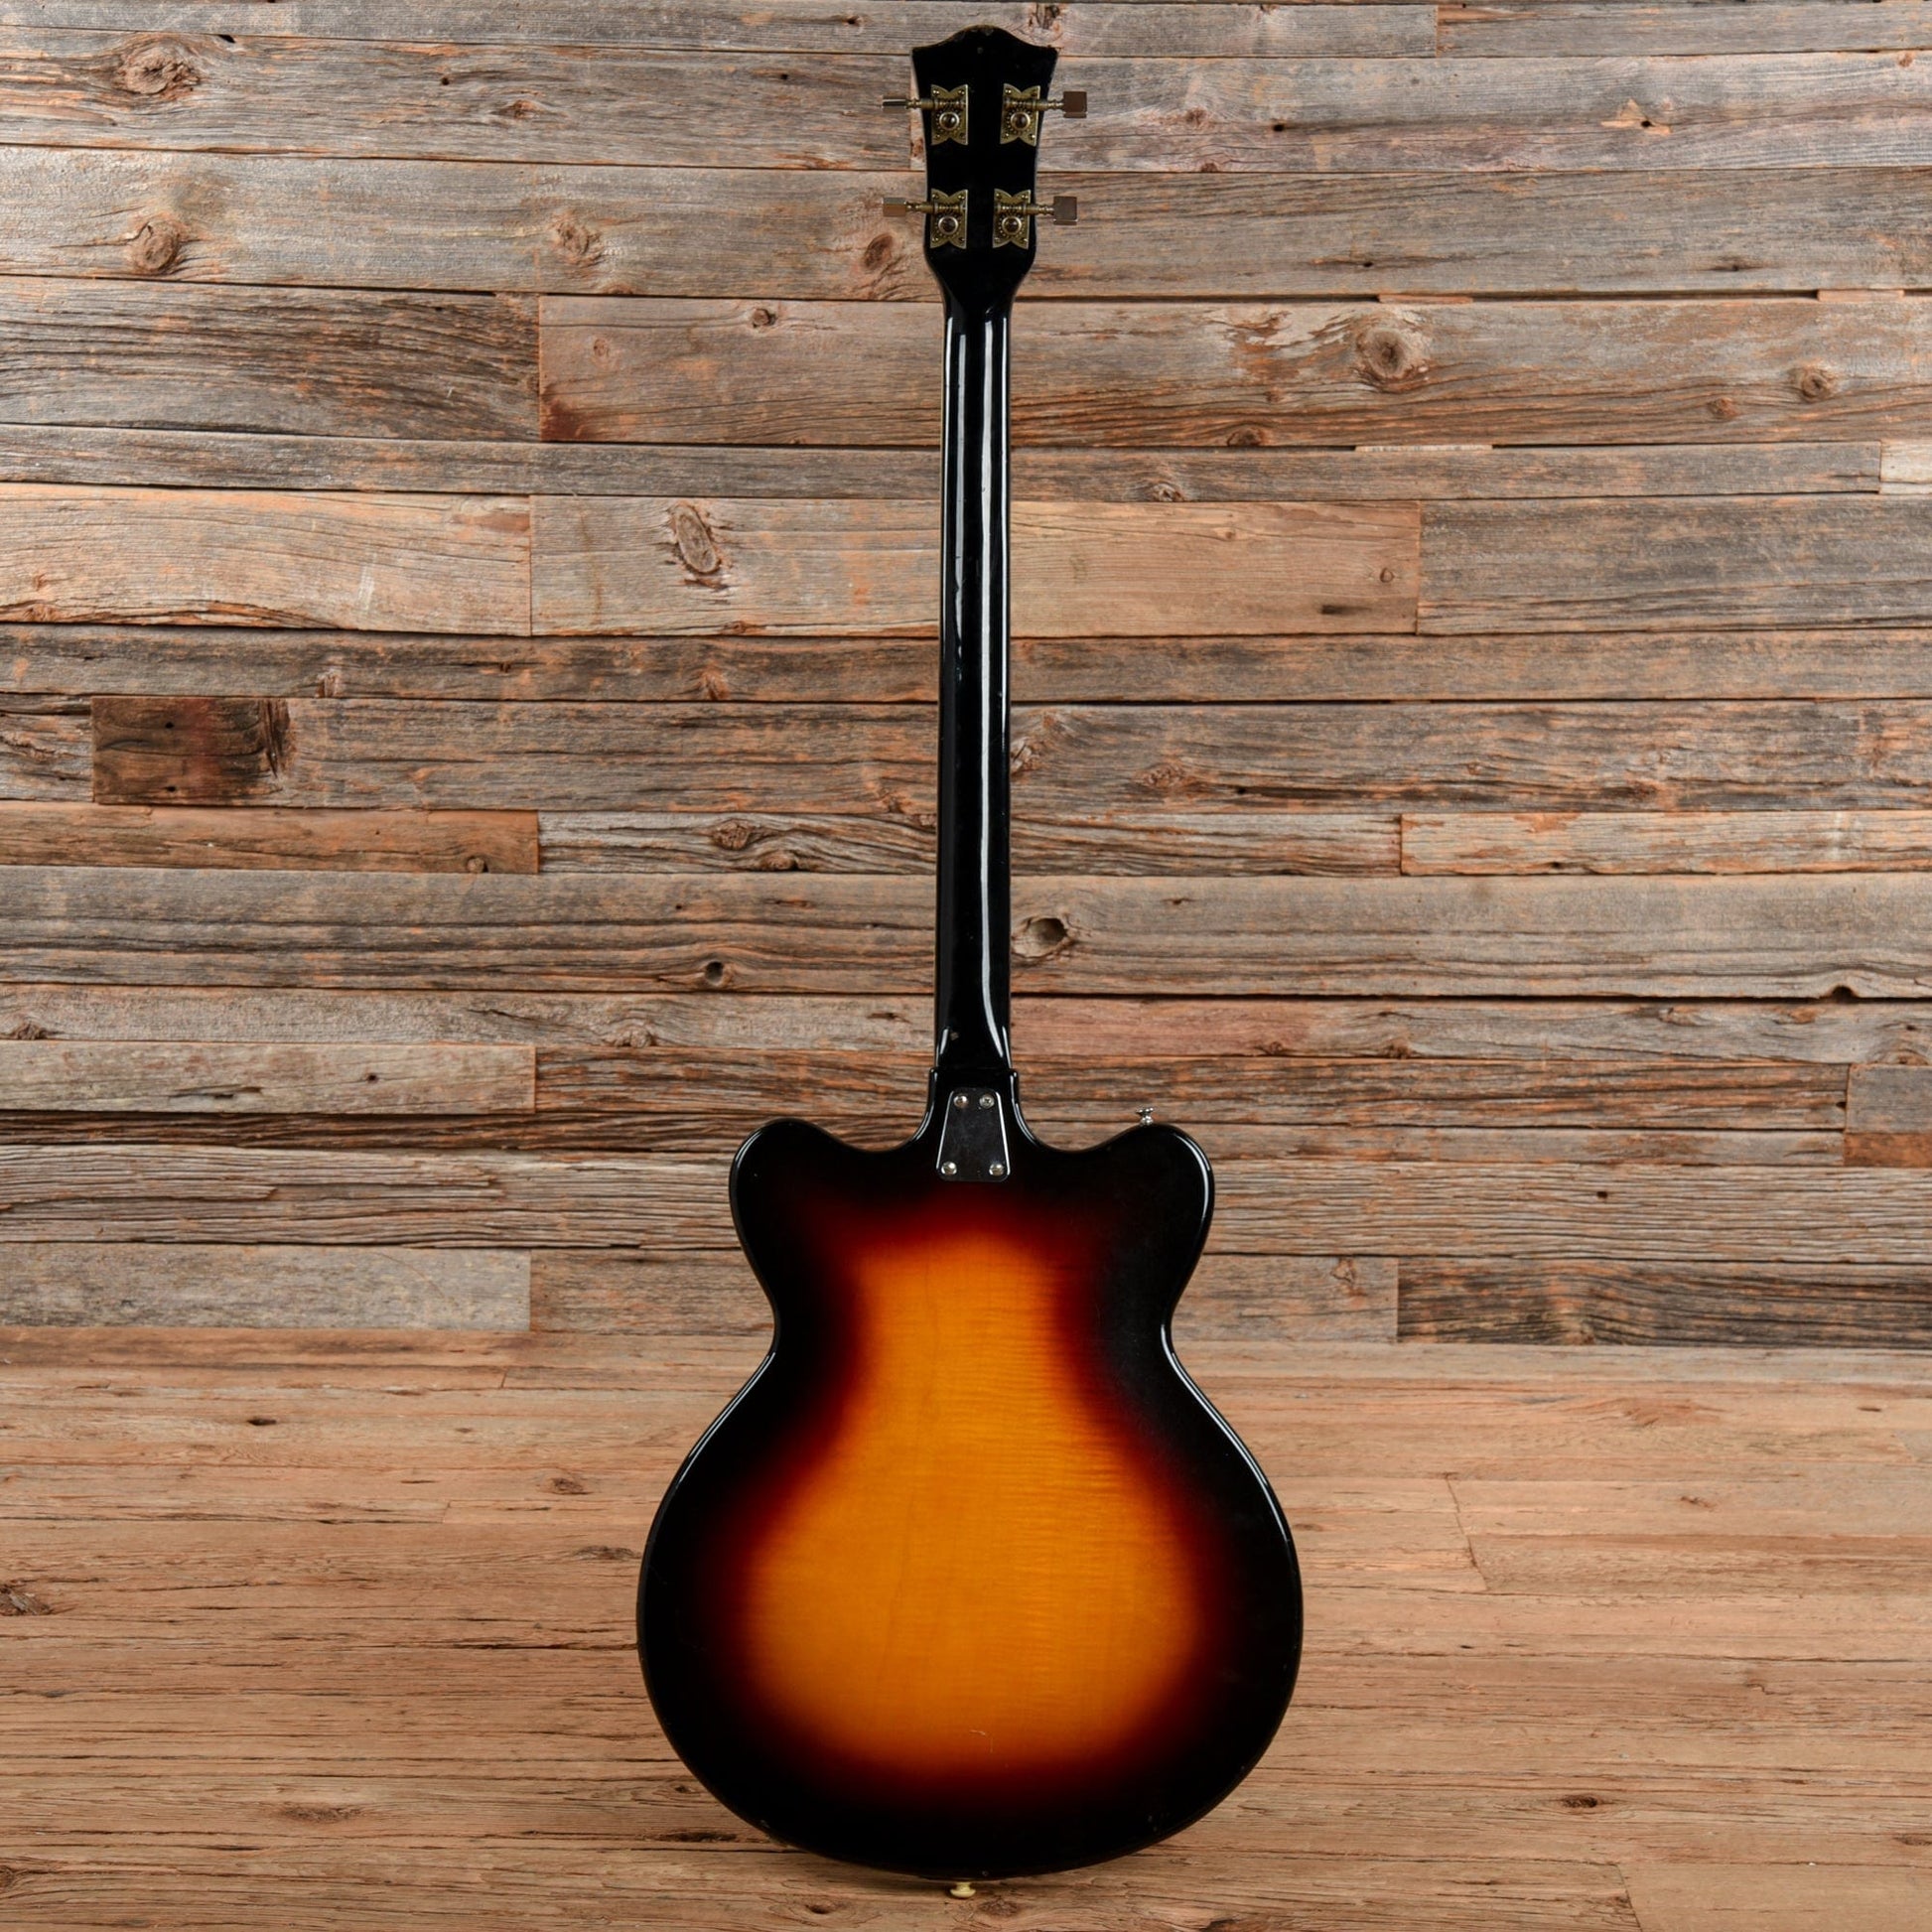 Hofner 500/6 Sunburst 1960s Bass Guitars / 4-String